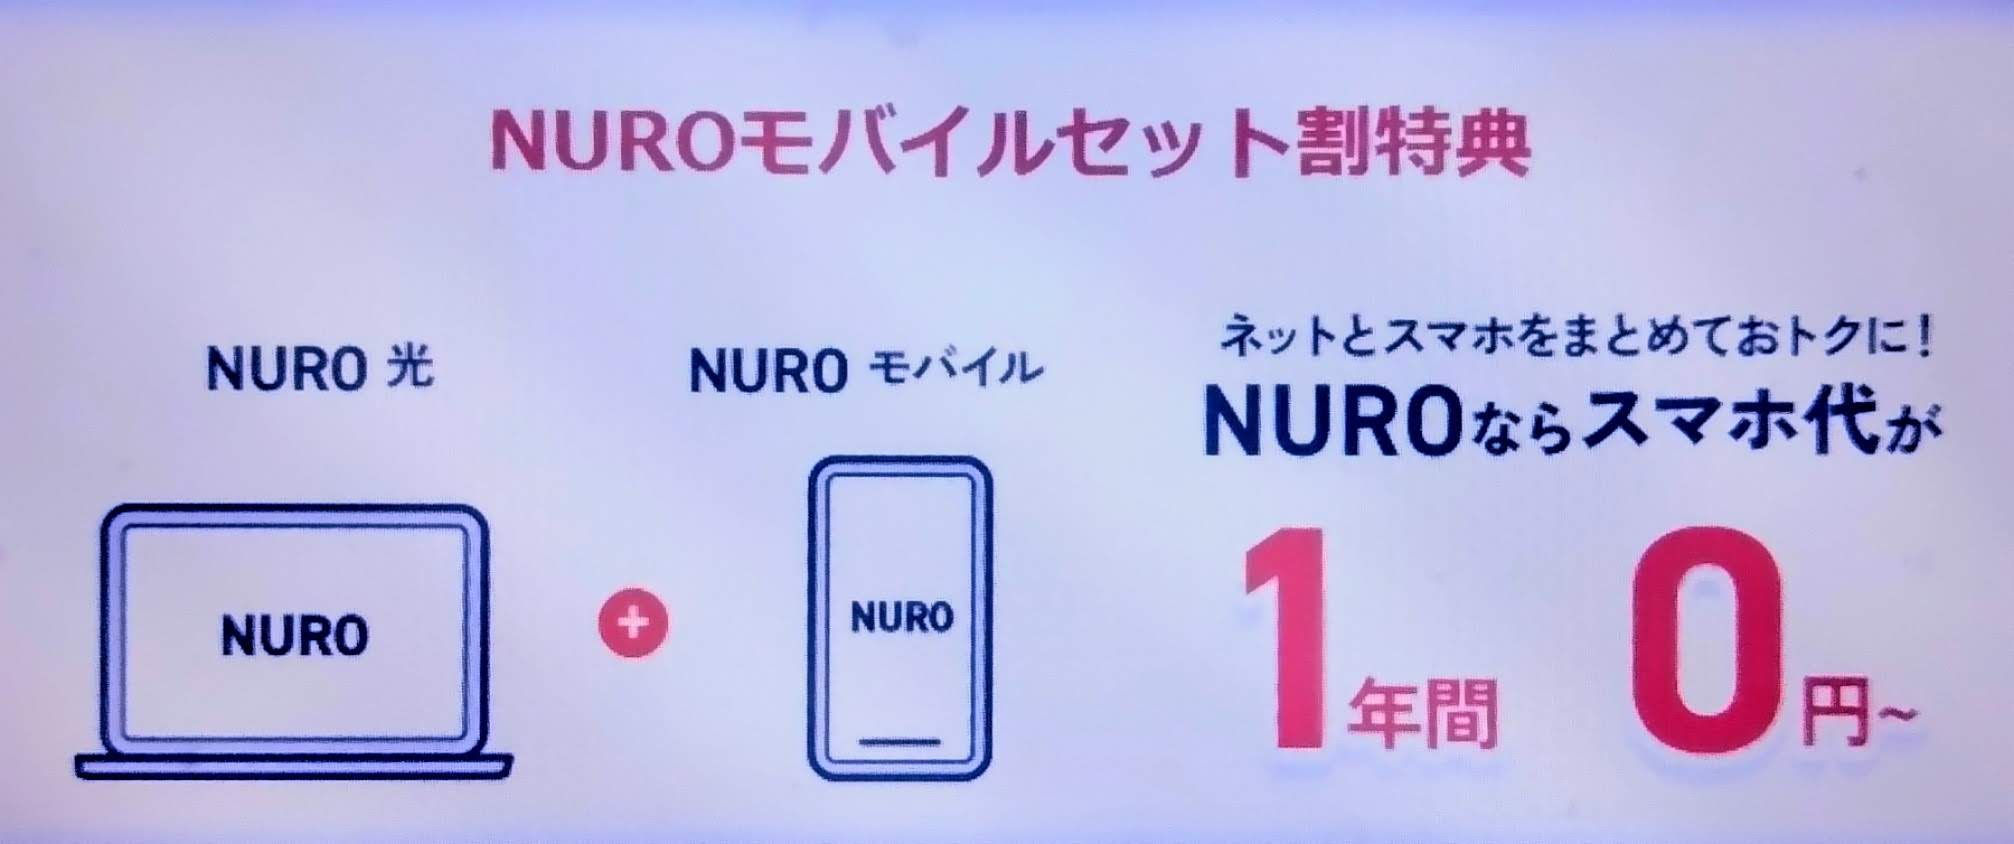 NUROモバイルセット割